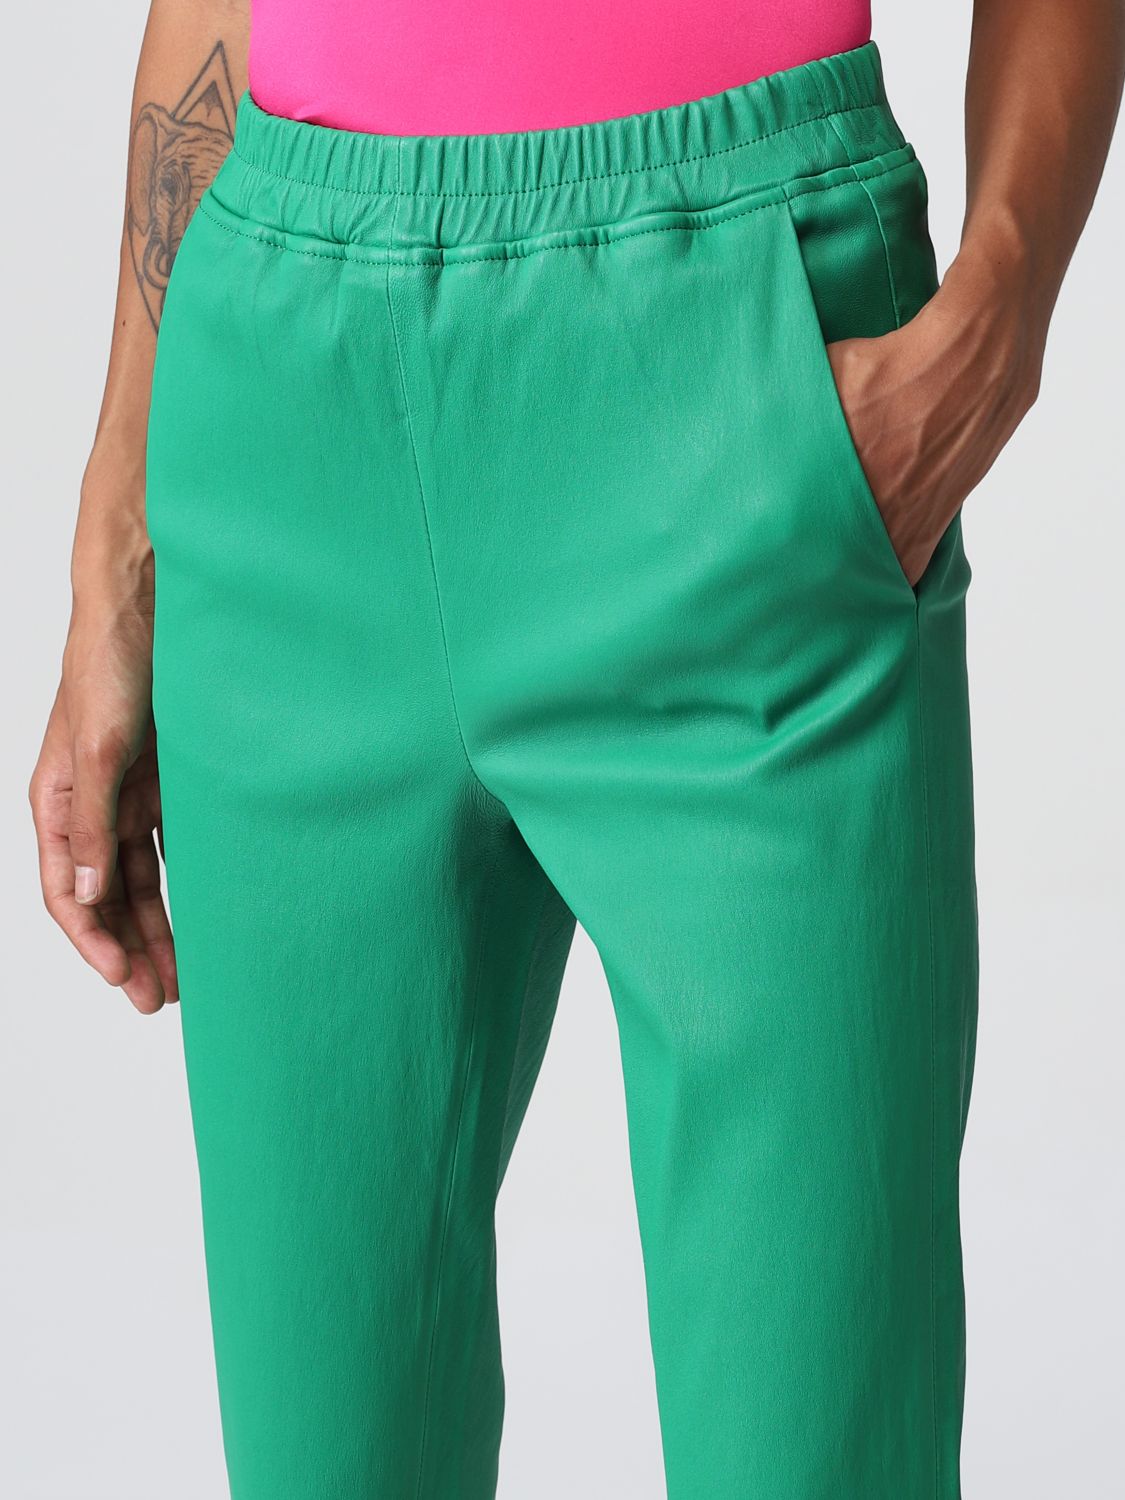 Pants Arma: Arma pants for woman green 3